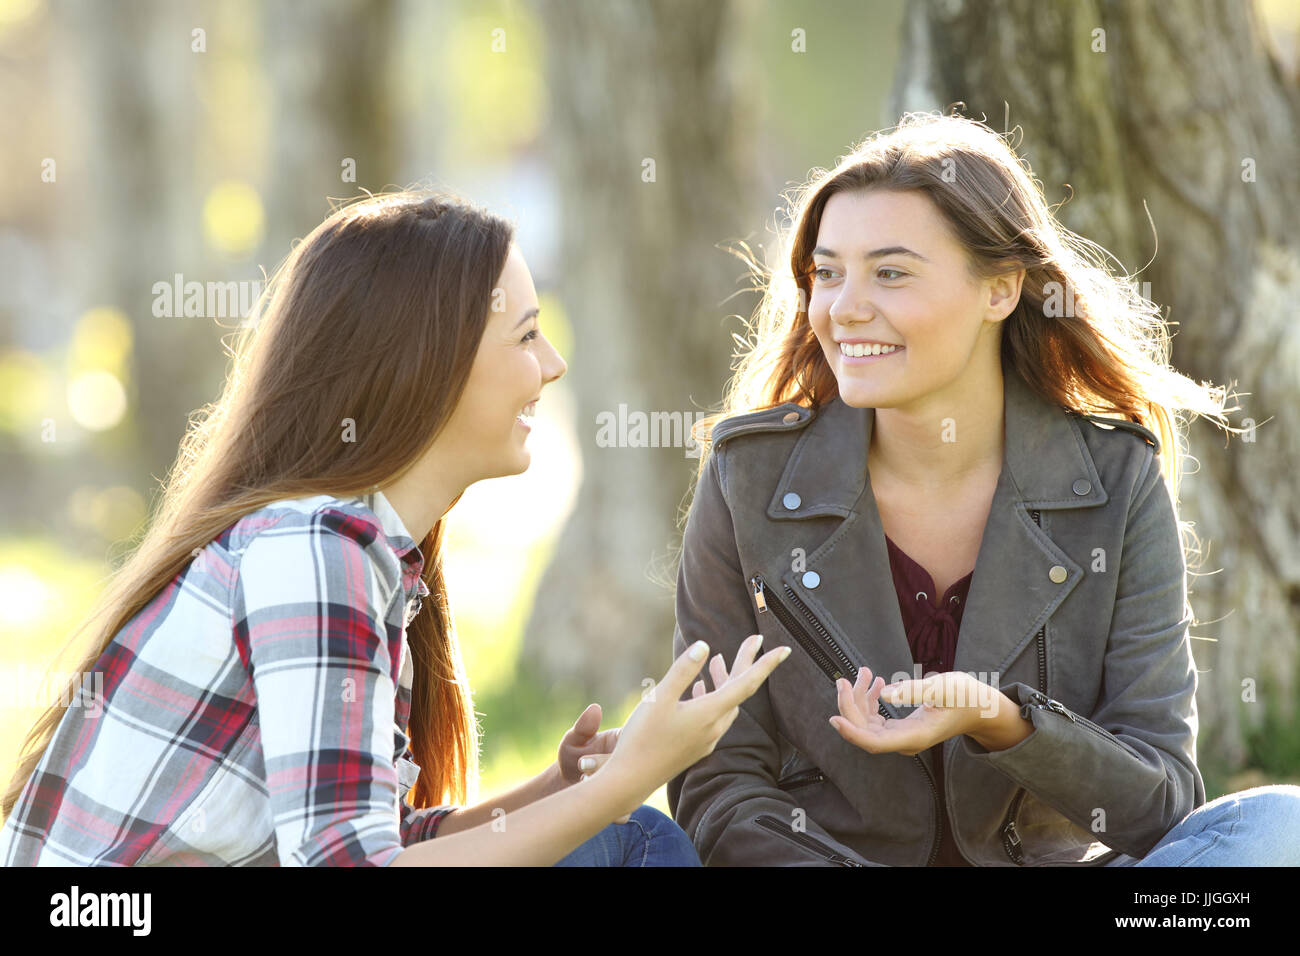 Zwei Freunde redeten und lachten, sitzen auf dem Rasen in einem park Stockfoto